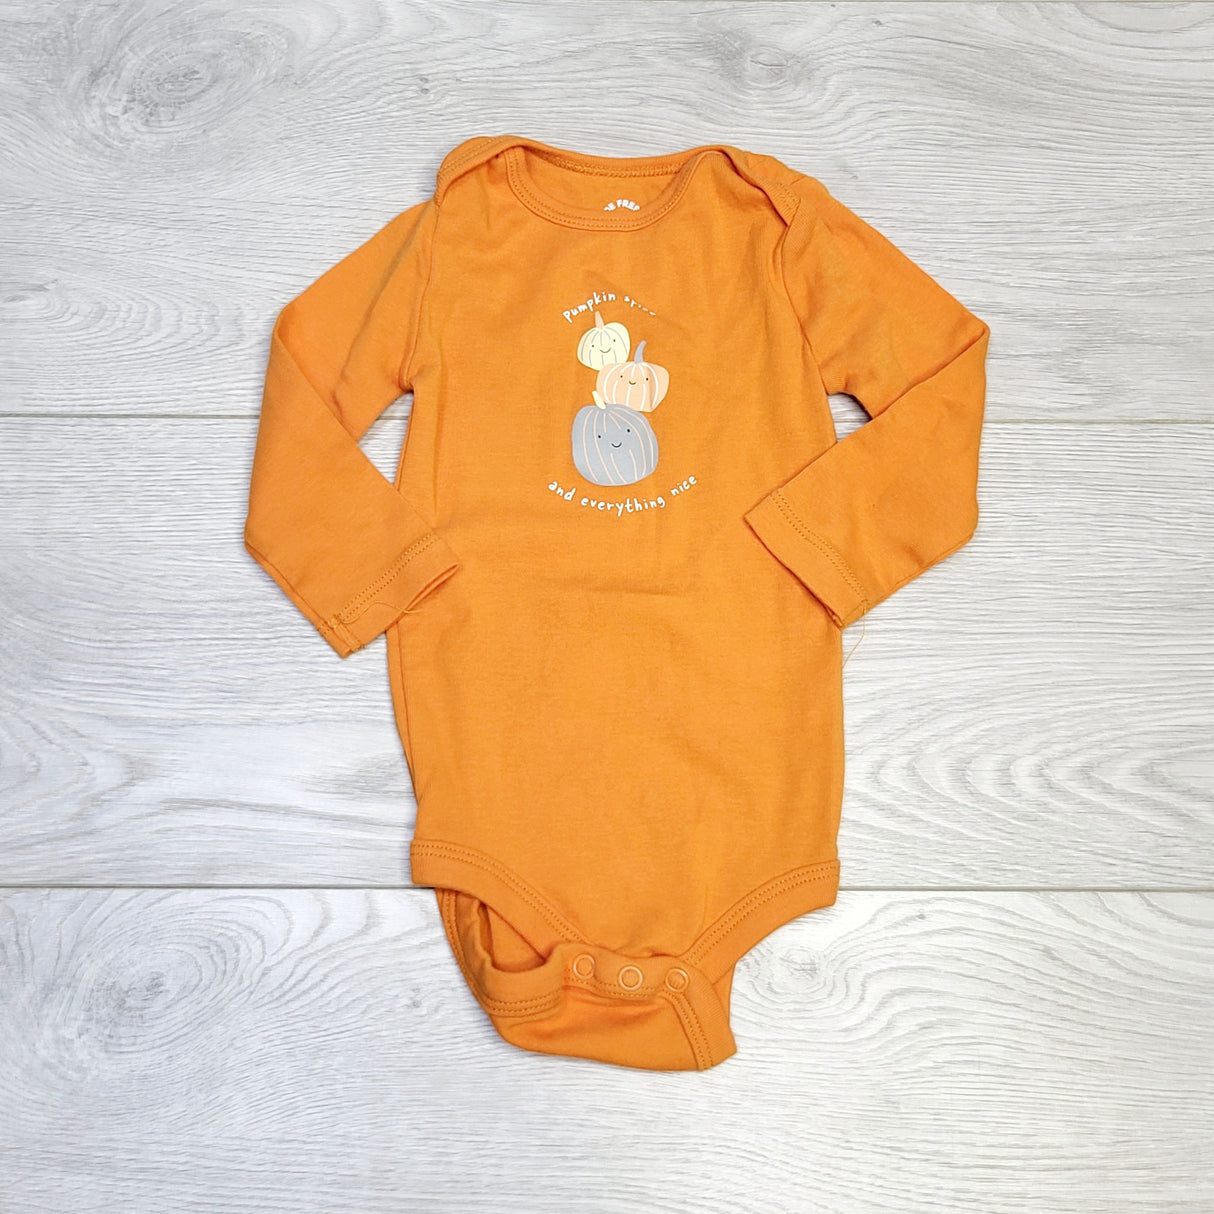 COWN1 - Joe orange "Pumpkin Spice" onesie, size 3-6 months